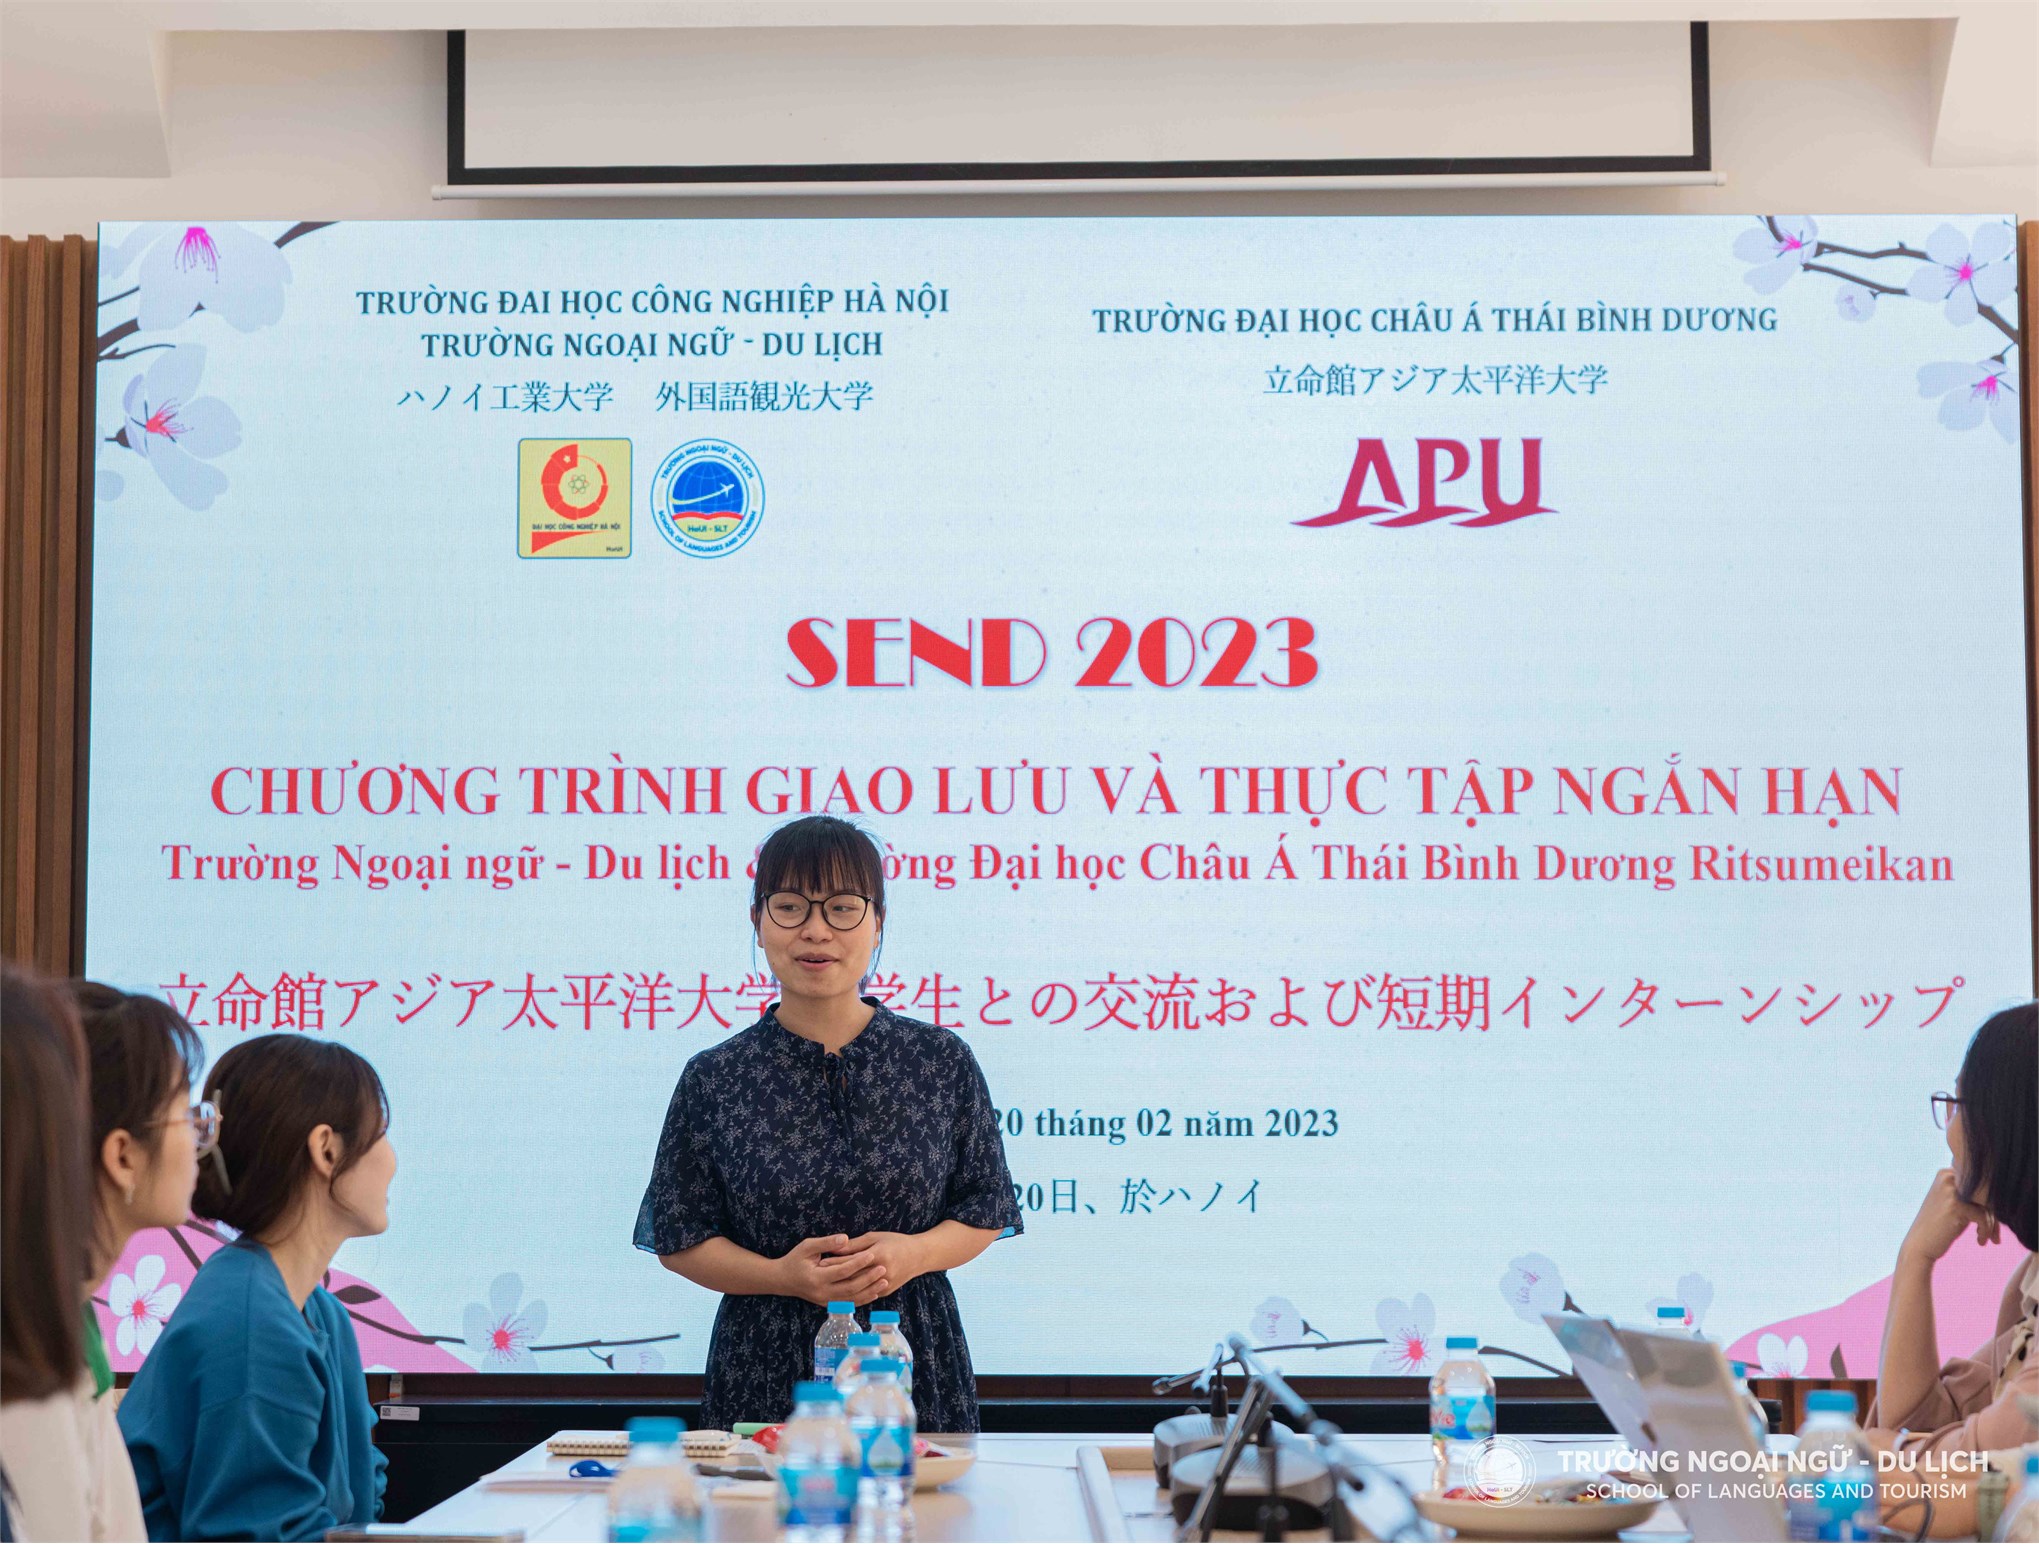 Sinh viên Trường Đại học Châu Á Thái Bình Dương Ritsumeikan tham gia giao lưu và thực tập ngắn hạn tại Trường Ngoại ngữ - Du lịch